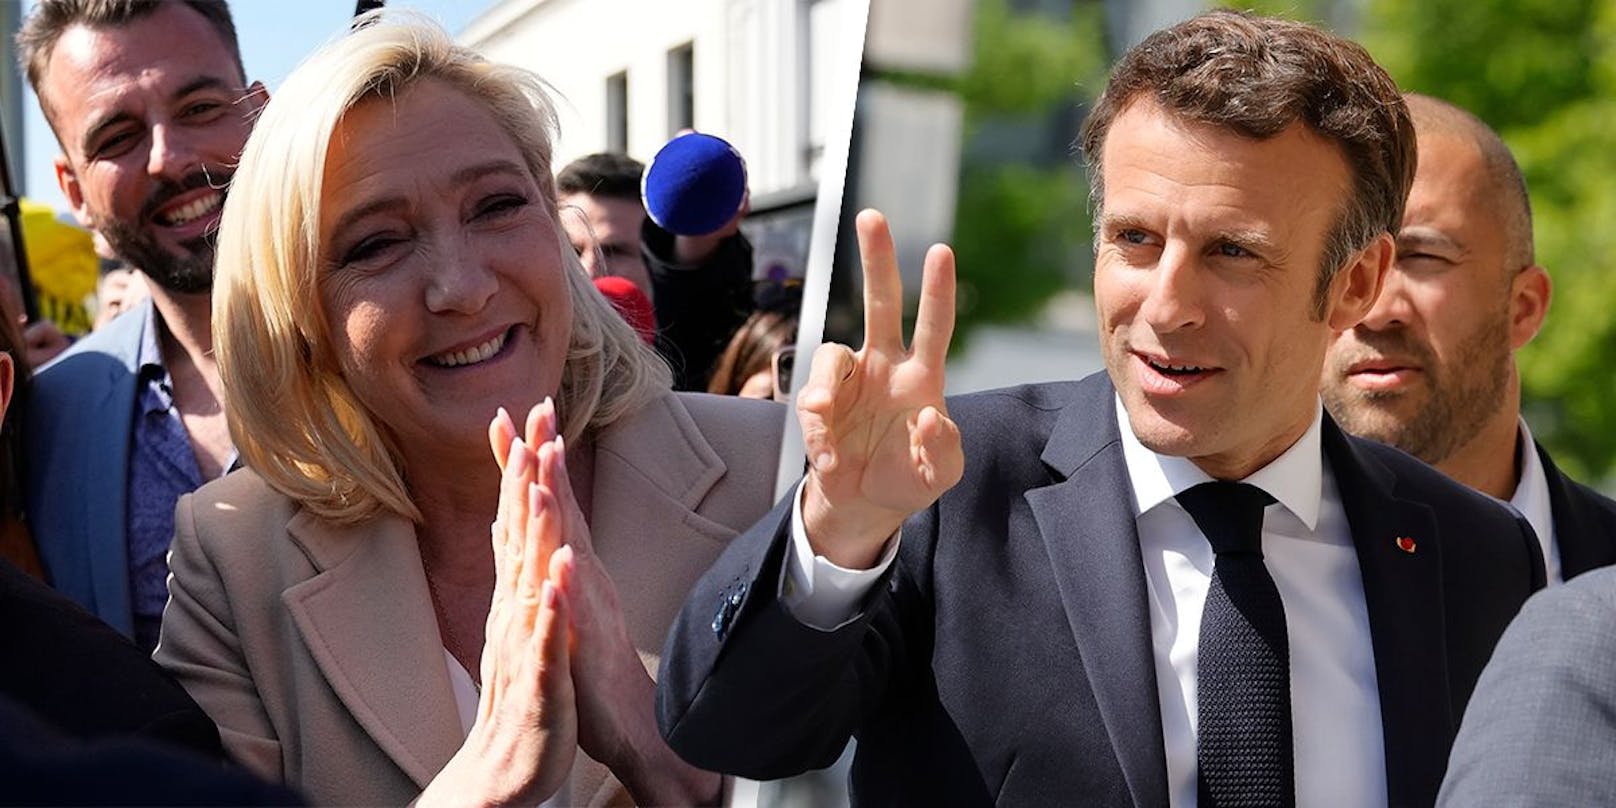 Marine Le Pen oder Emmanuel Macron – heute entscheiden die Franzosen über Zukunft Frankreichs und der EU.